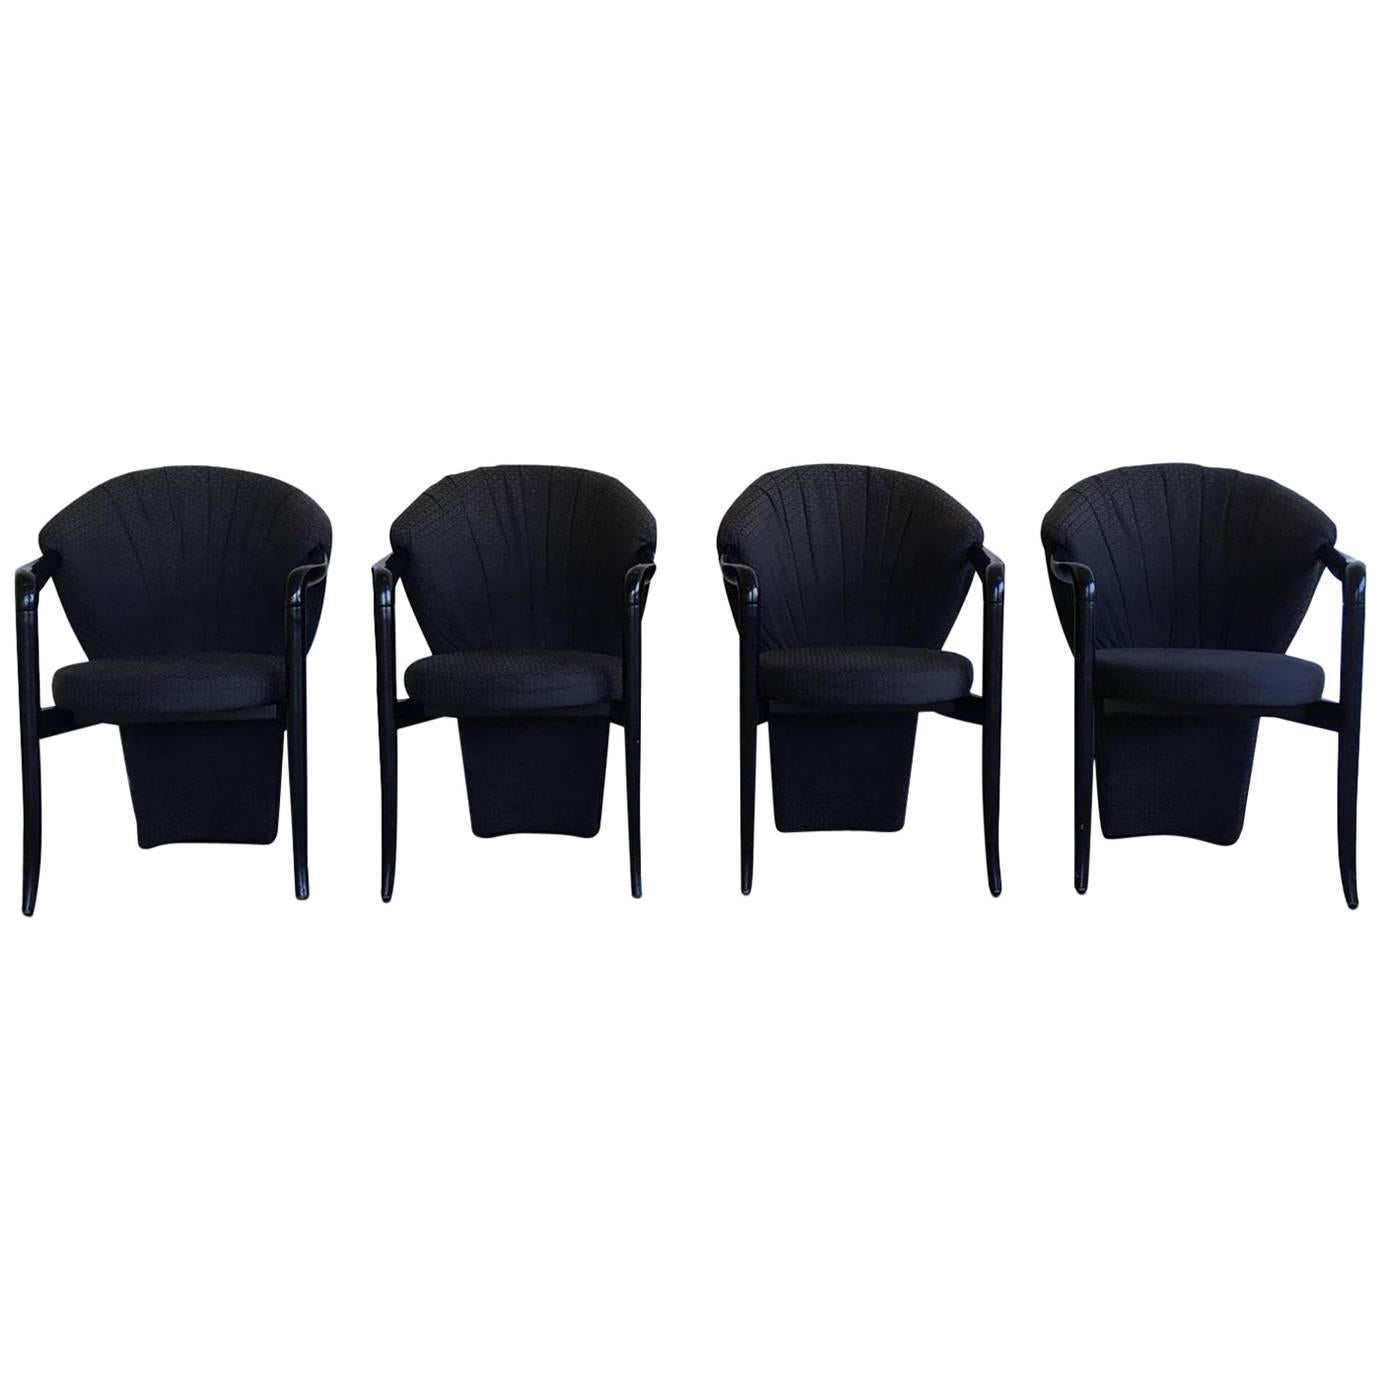 Pietro Constantini, Set of Four Black Elegant Dining Room Chairs, 1980s